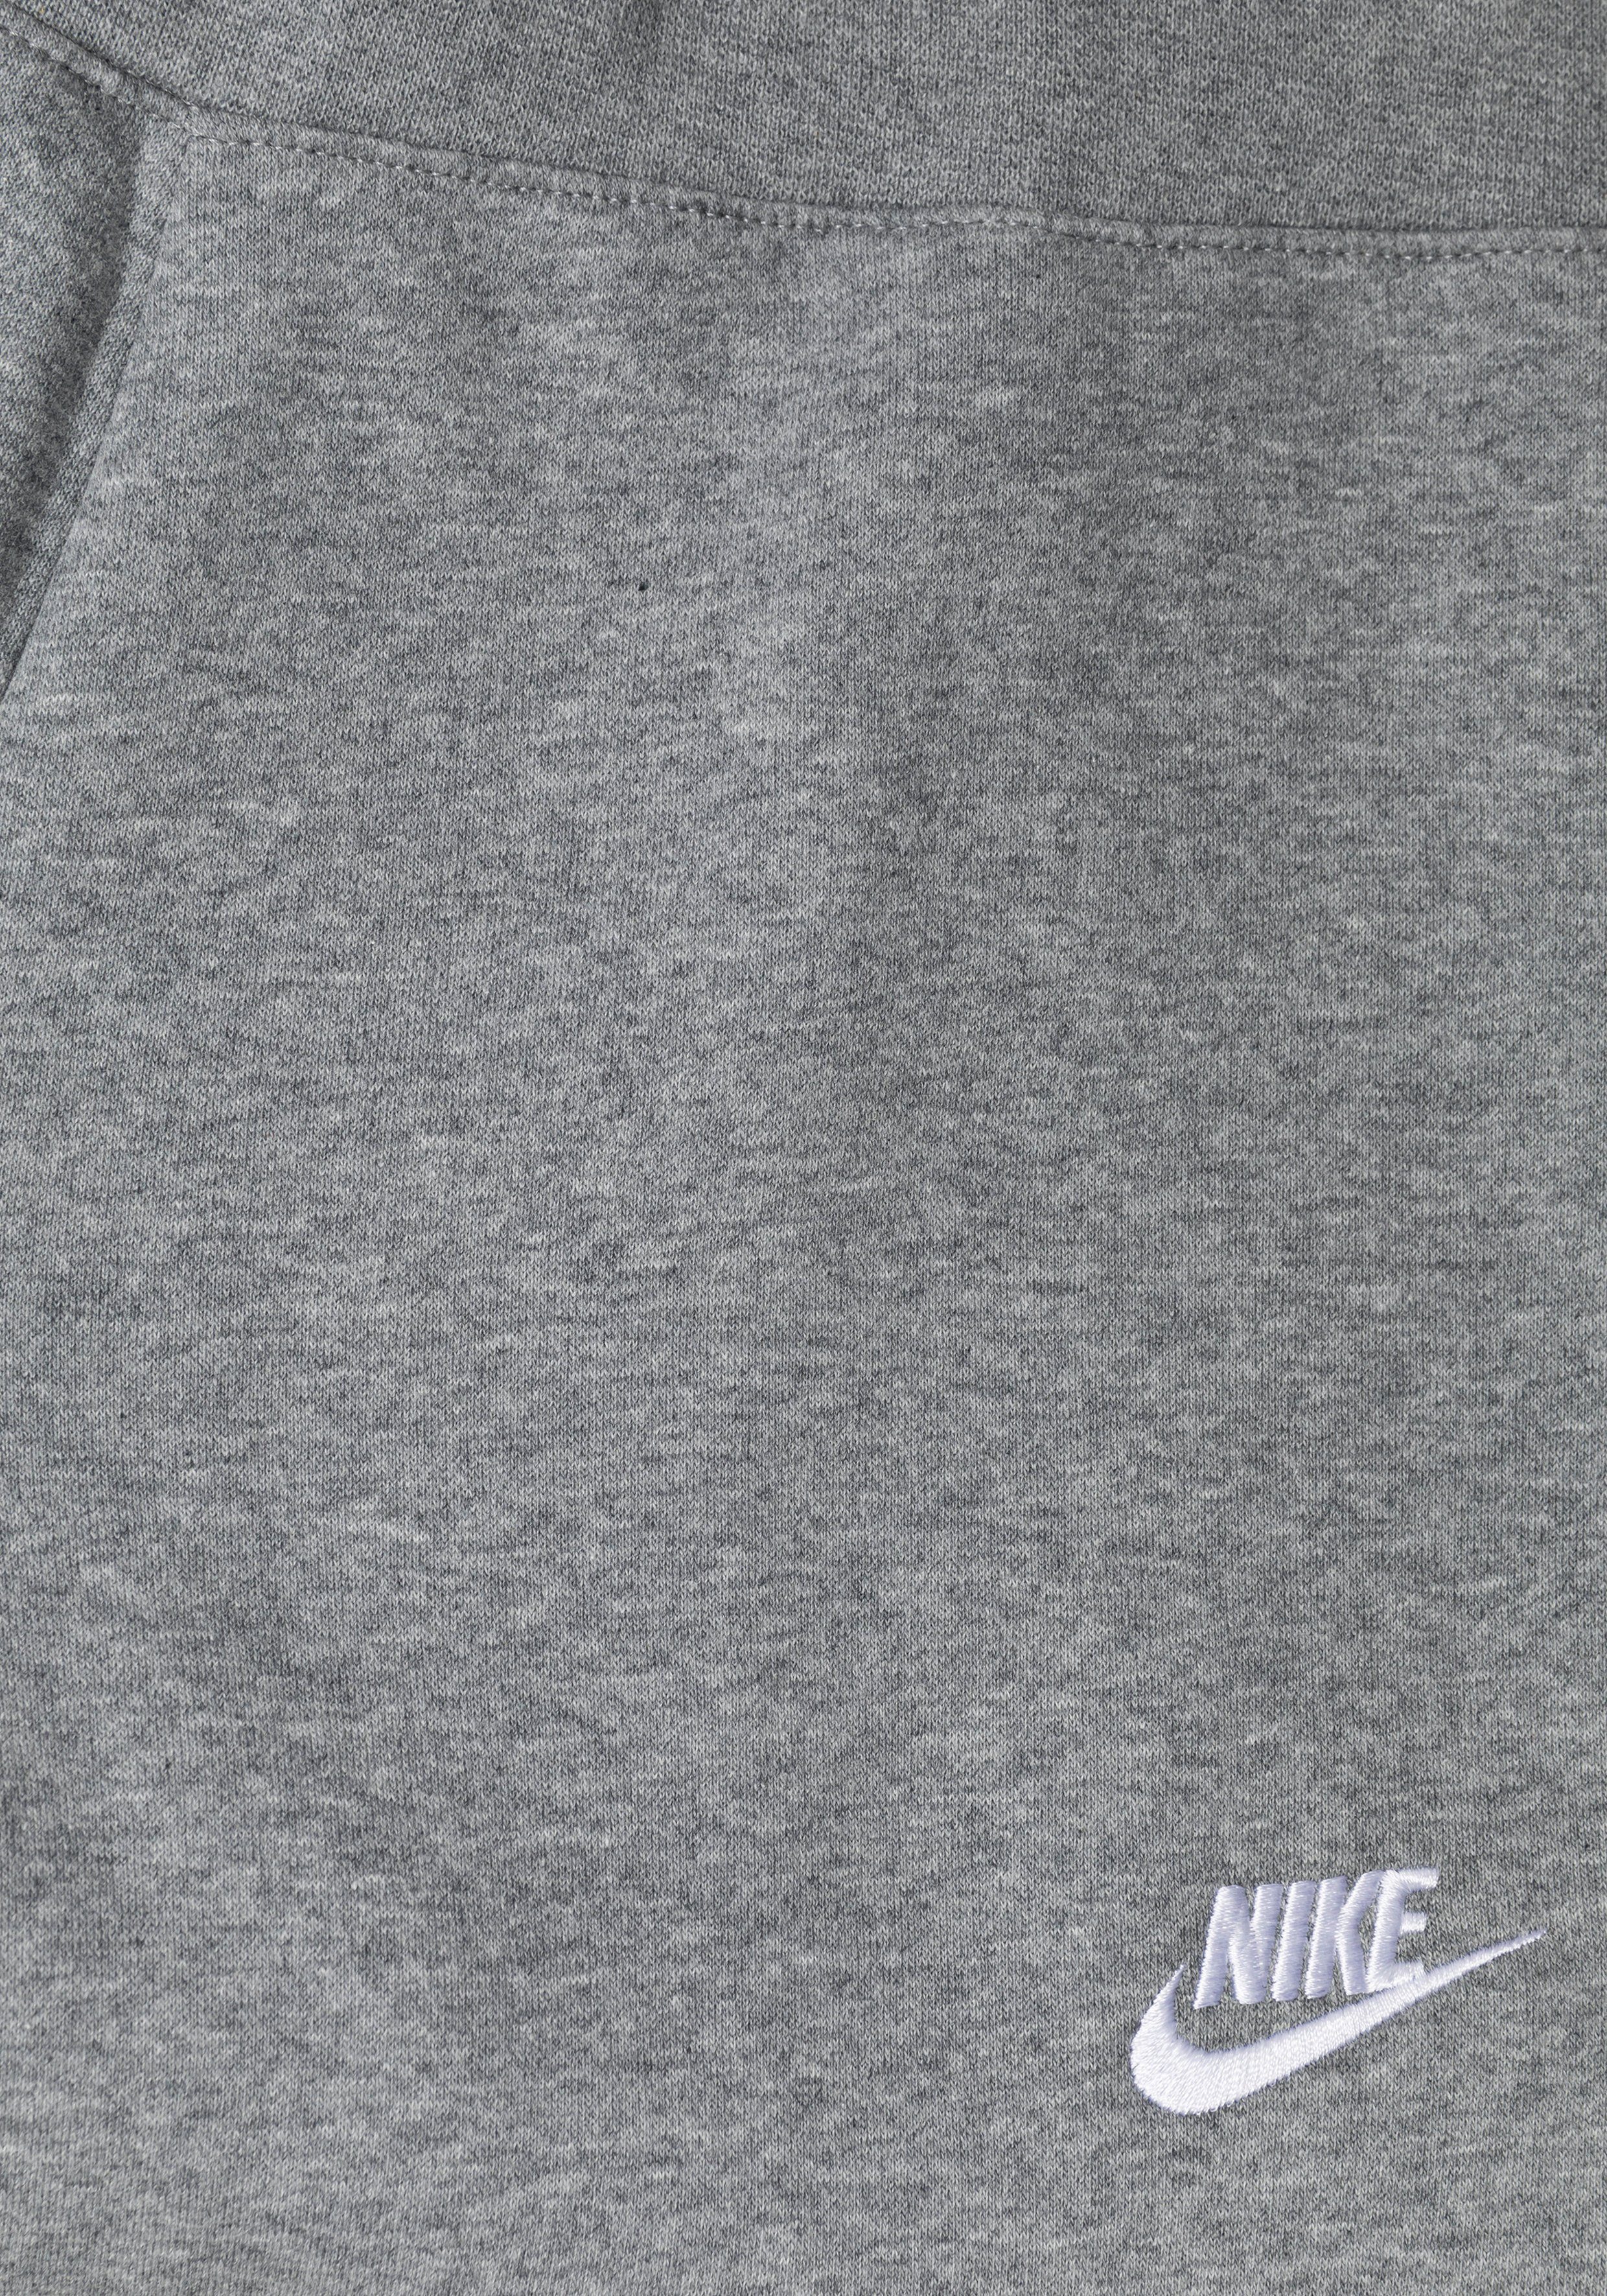 Nike Sportswear Jogginghose Club (Girls) Kids' Big Pants grau-meliert Fleece